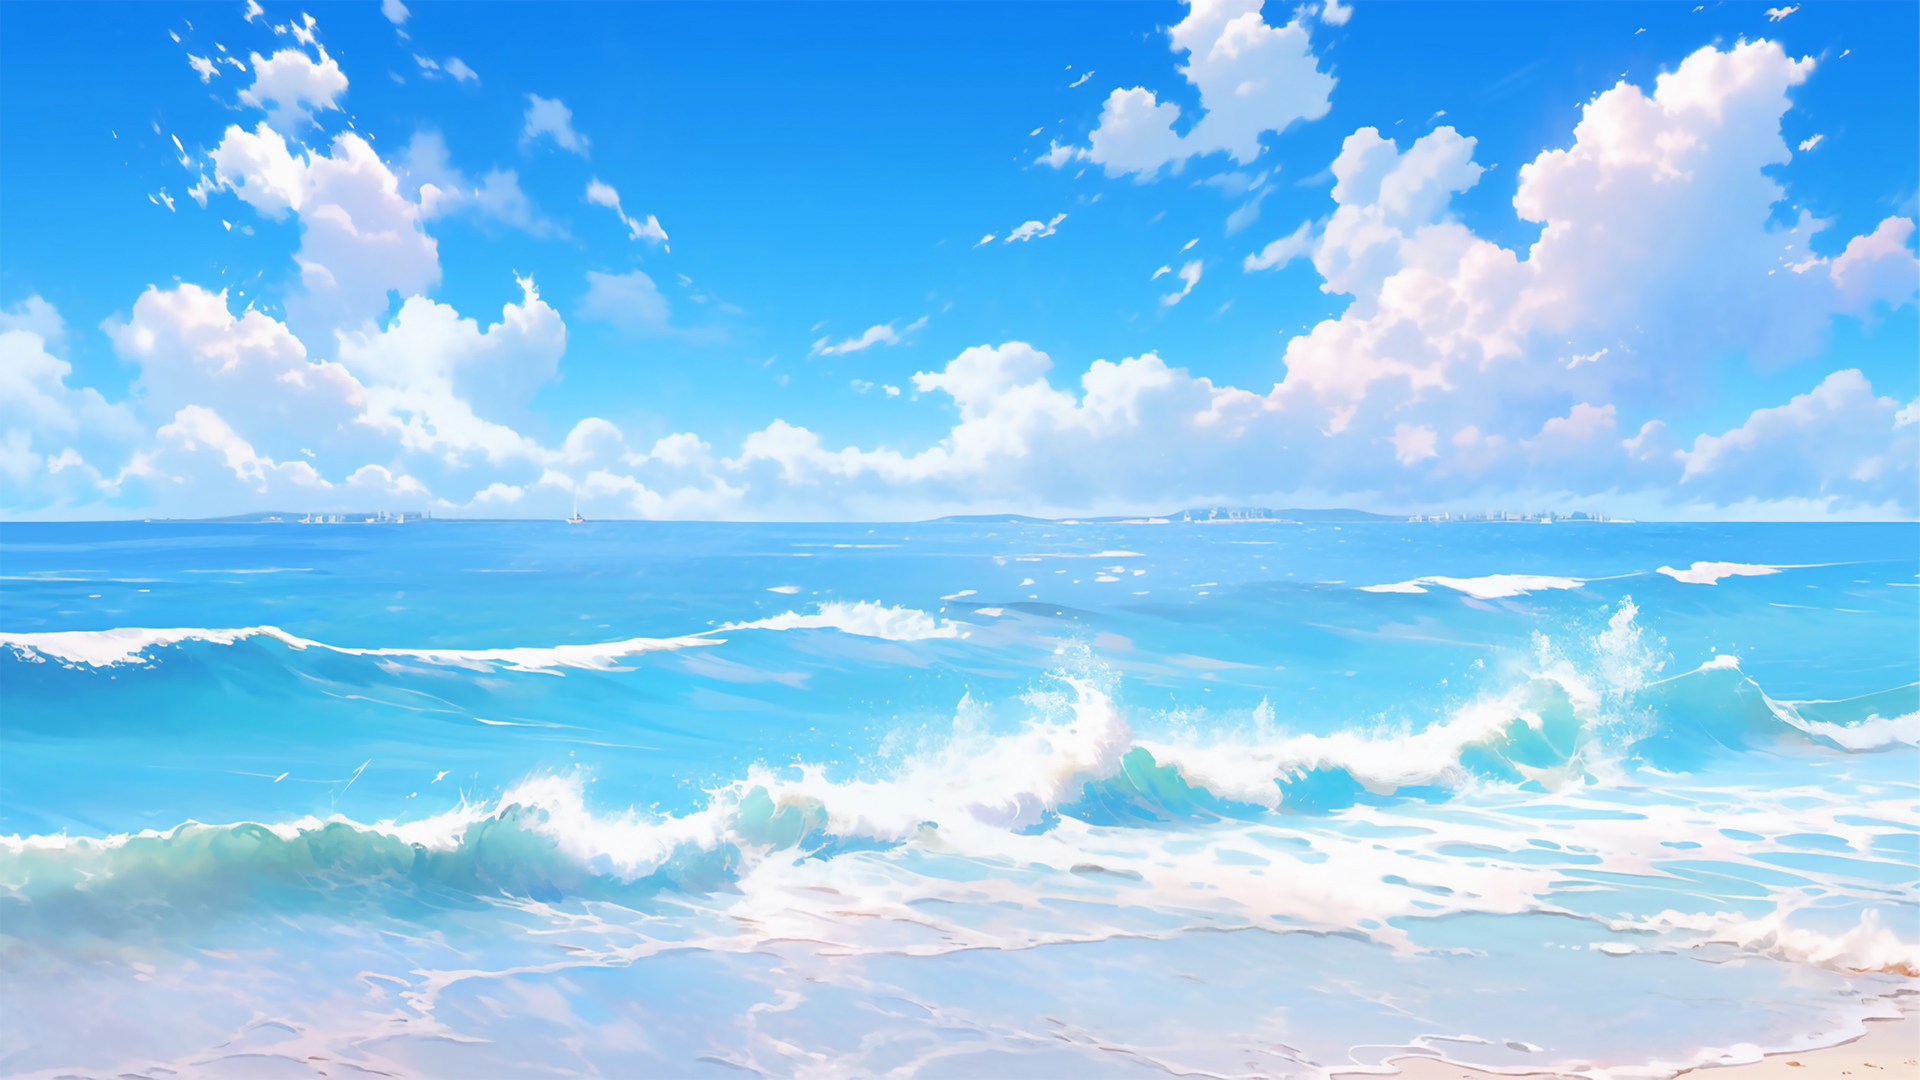 蓝天白云大海 水天一色 海滩沙滩风景高清壁纸